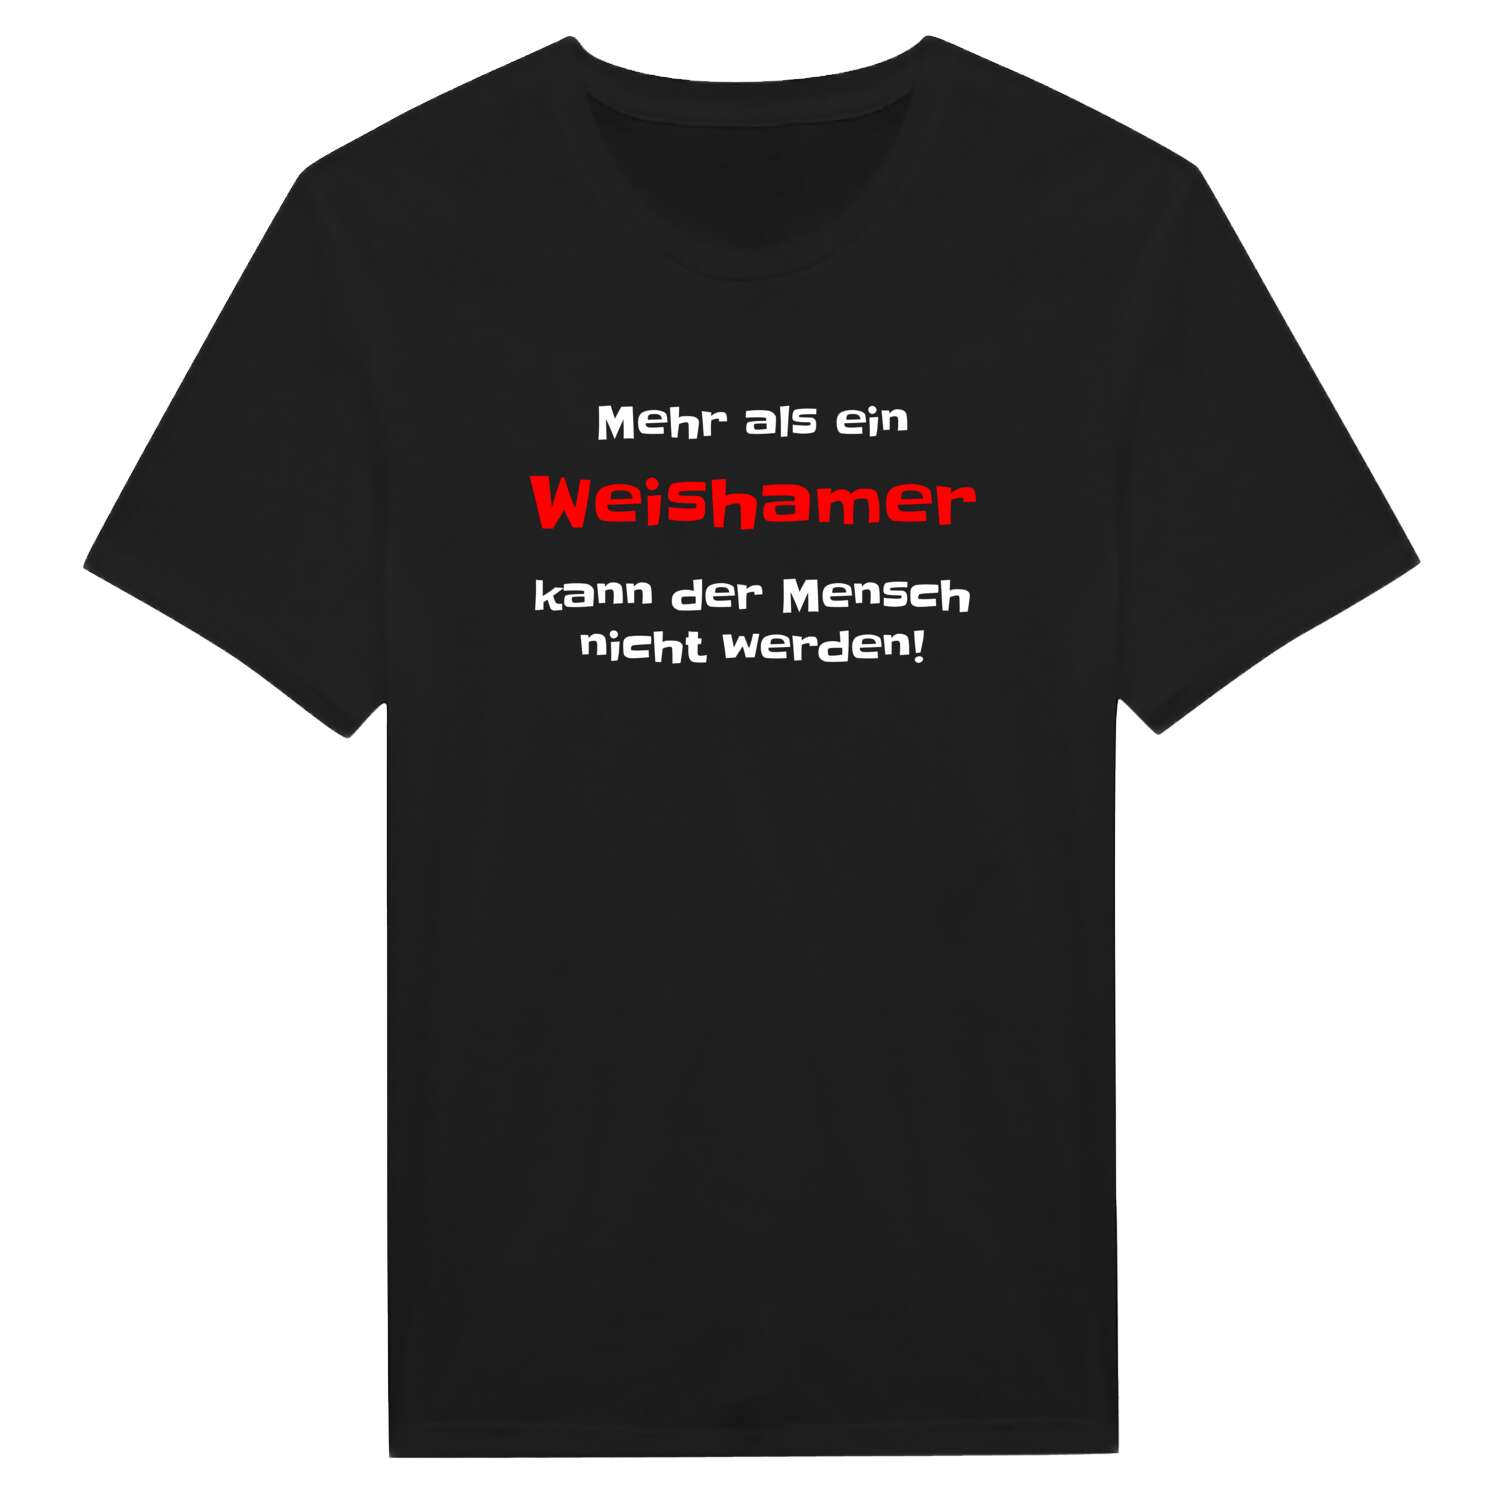 Weisham T-Shirt »Mehr als ein«